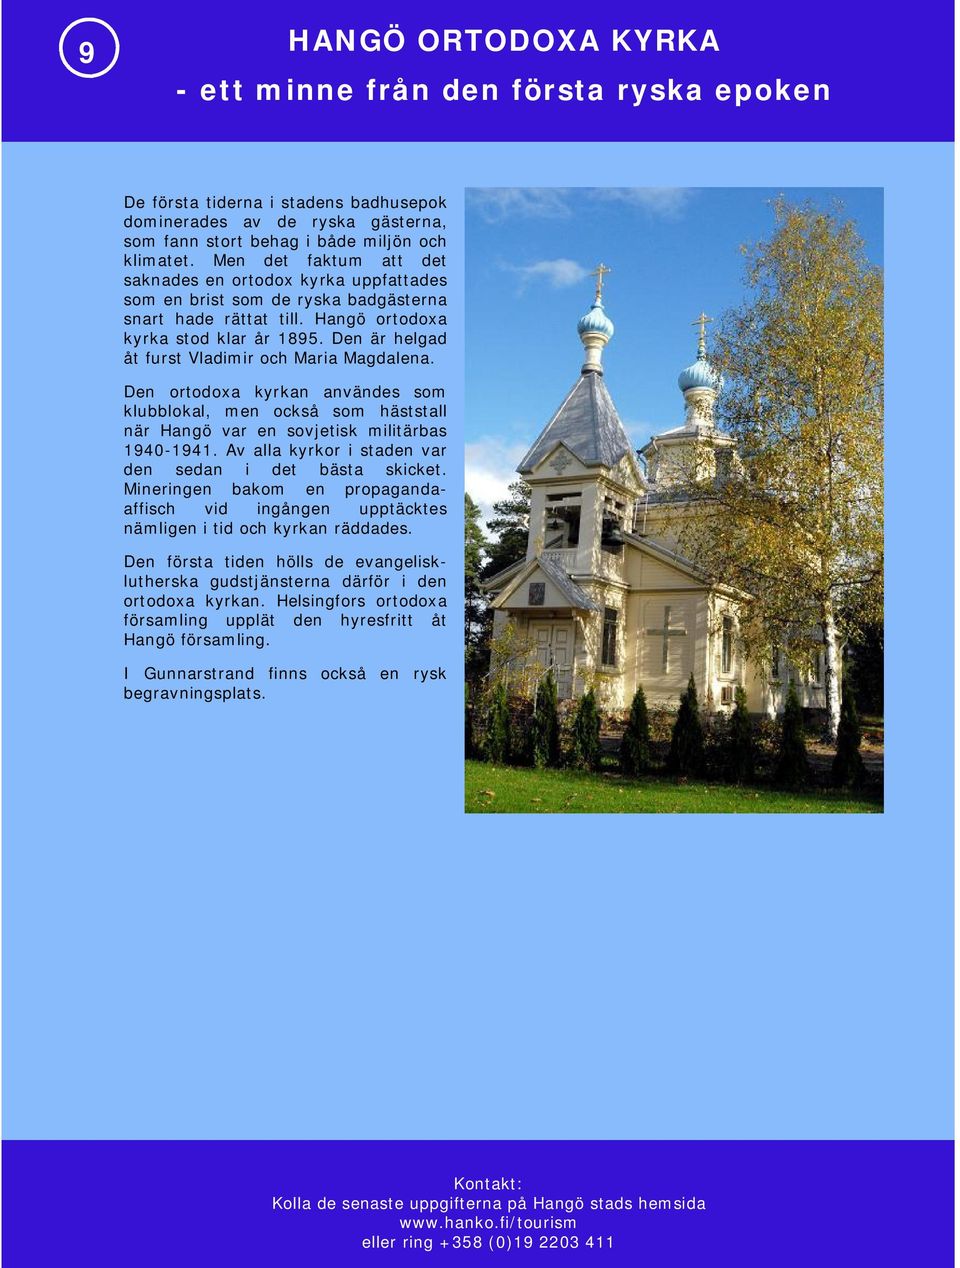 Den är helgad åt furst Vladimir och Maria Magdalena. Den ortodoxa kyrkan användes som klubblokal, men också som häststall när Hangö var en sovjetisk militärbas 1940-1941.